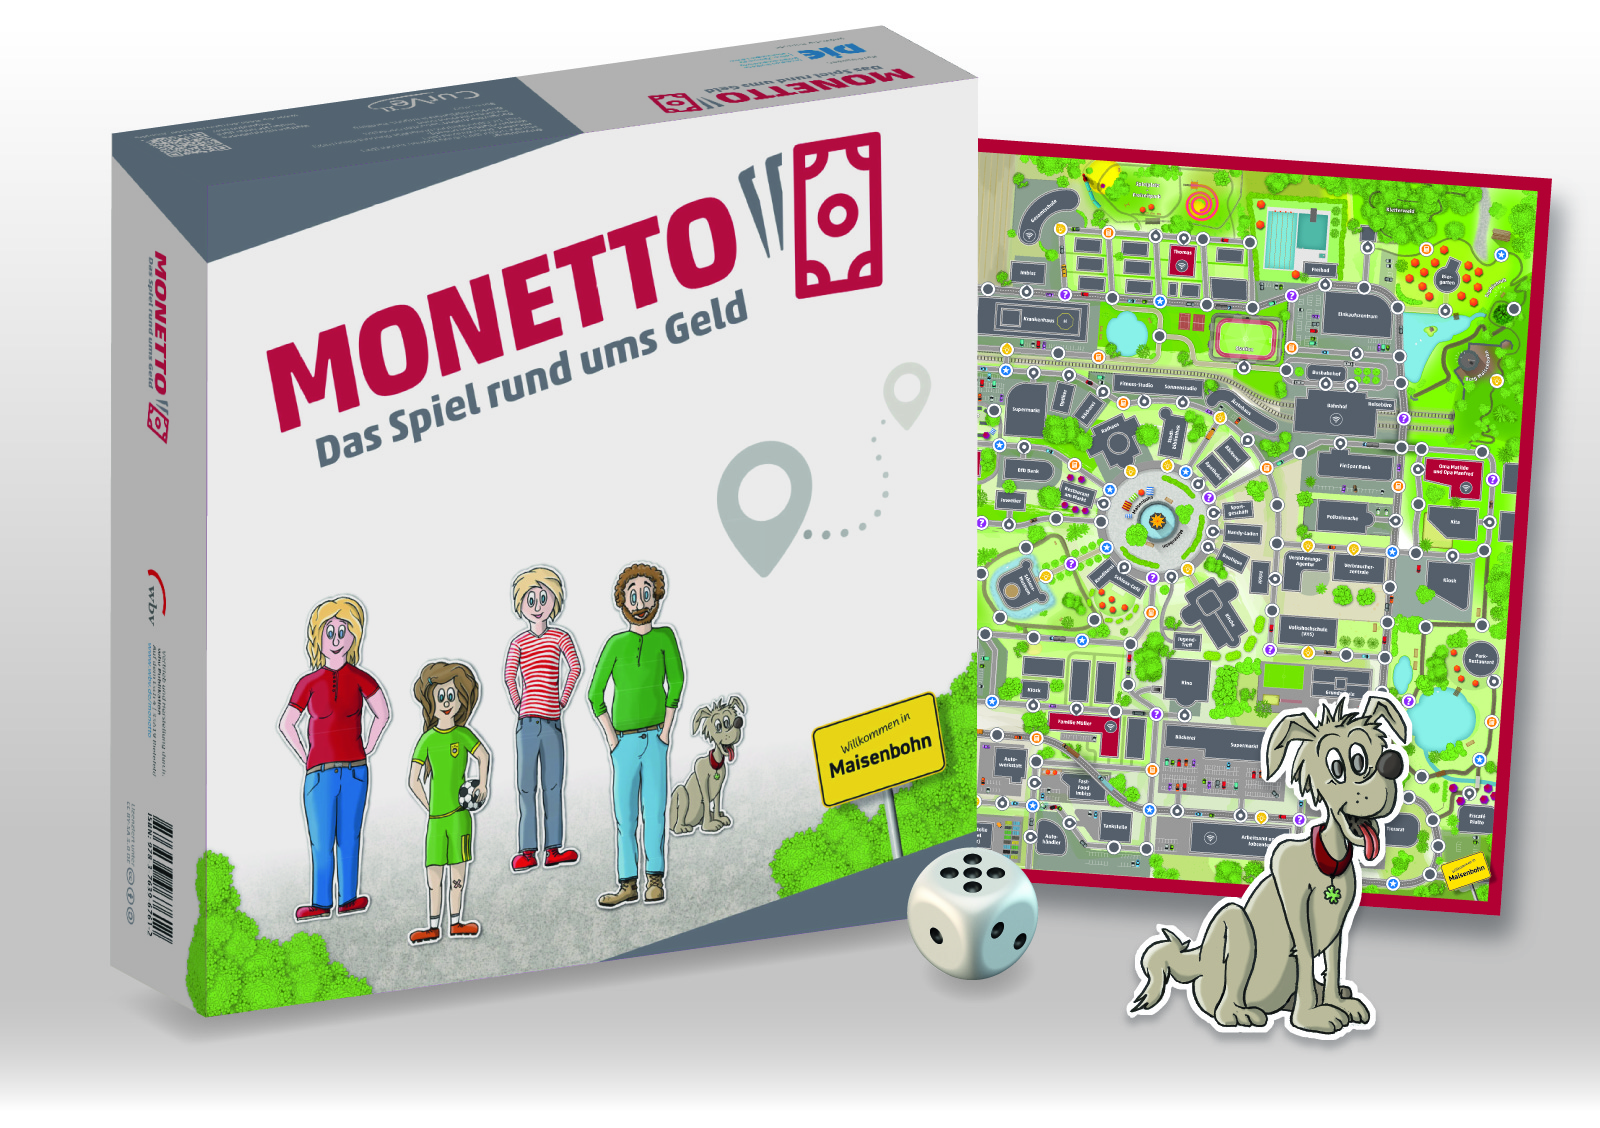 Monetto - Das Spiel ums Geld